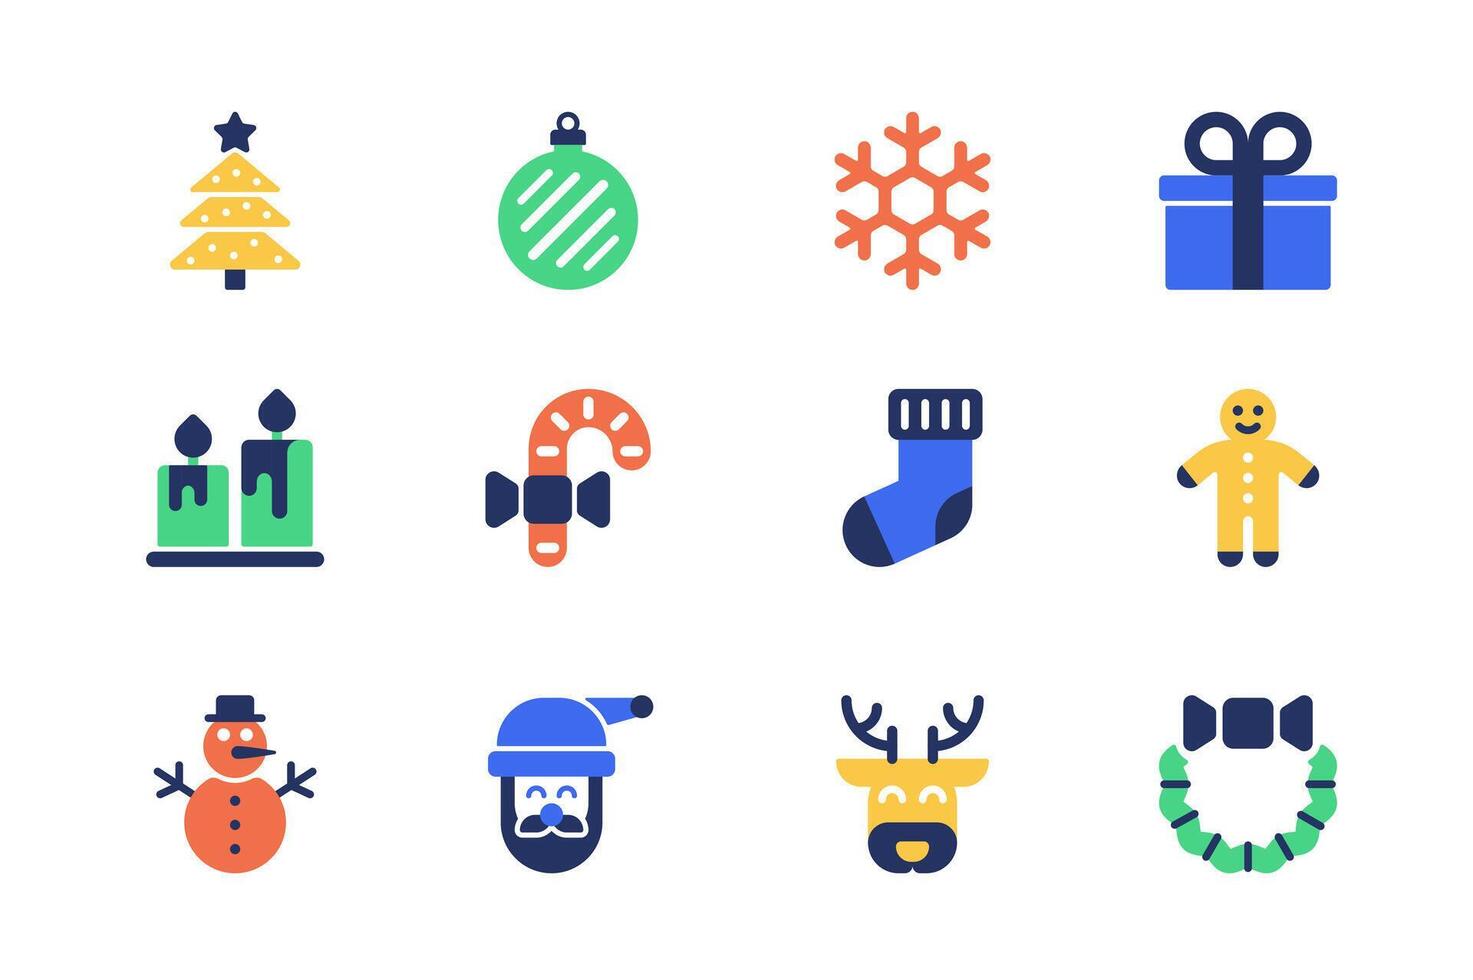 Kerstmis concept van web pictogrammen reeks in gemakkelijk vlak ontwerp. pak van boom, feestelijk speelgoed, sneeuwvlok, geschenk, kaars, snoep, sneeuwman, de kerstman claus, rendier, krans en ander. pictogrammen voor mobiel app vector